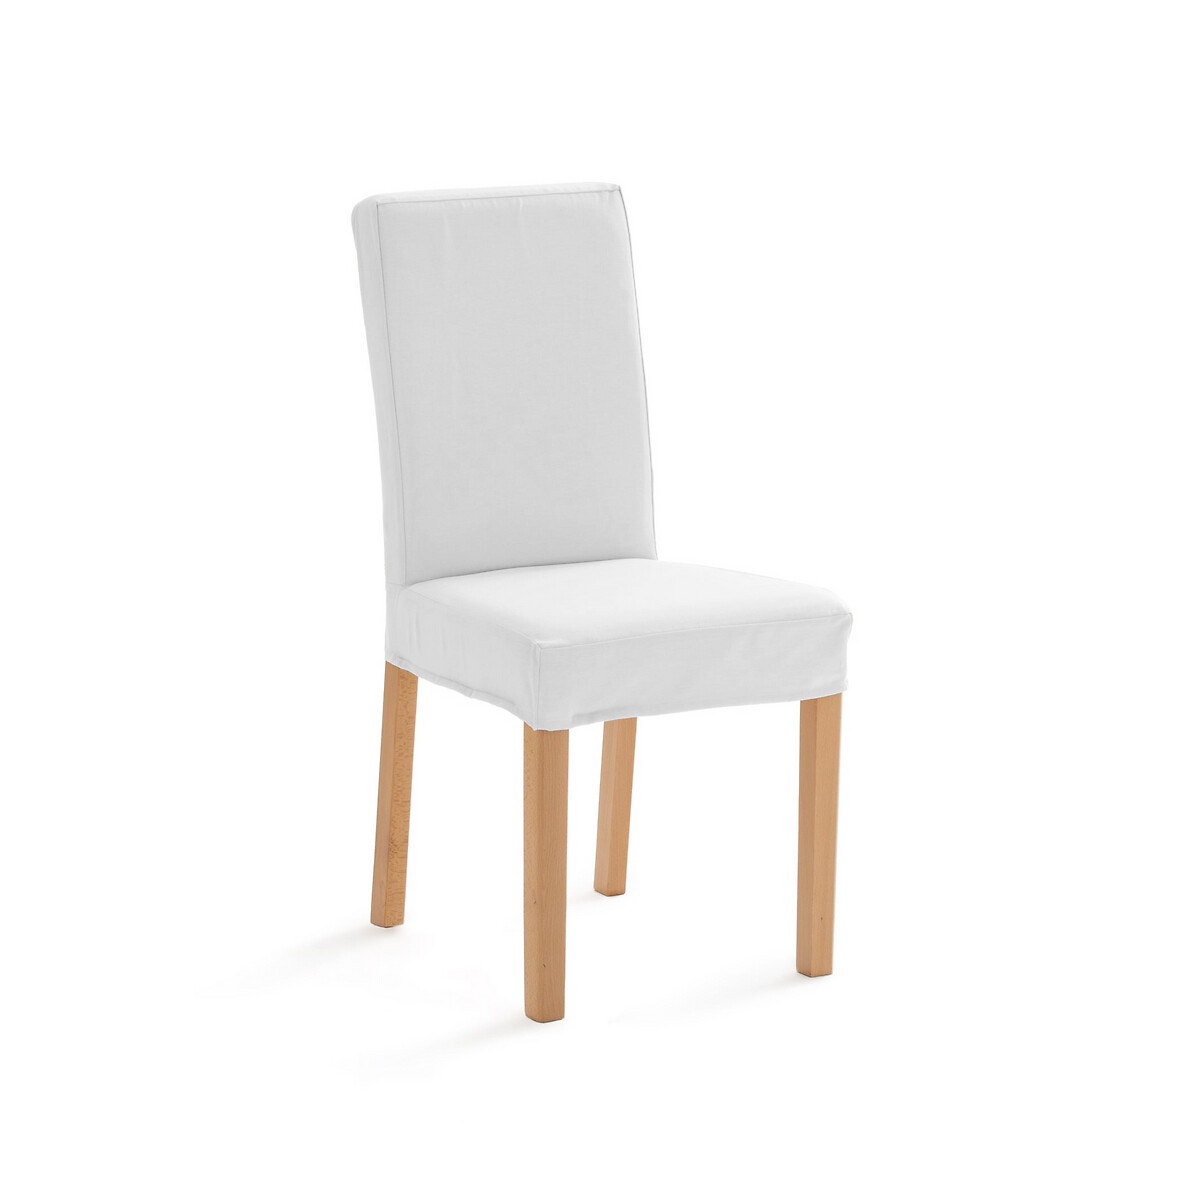 Σπίτι > Λευκά είδη > Ύφασμα, διακόσμηση > Καλύμματα καναπέ, καρέκλας > Καλύμματα καρέκλας Βαμβακερό κάλυμμα καρέκλας One size Μ43xΠ41xΥ58cm